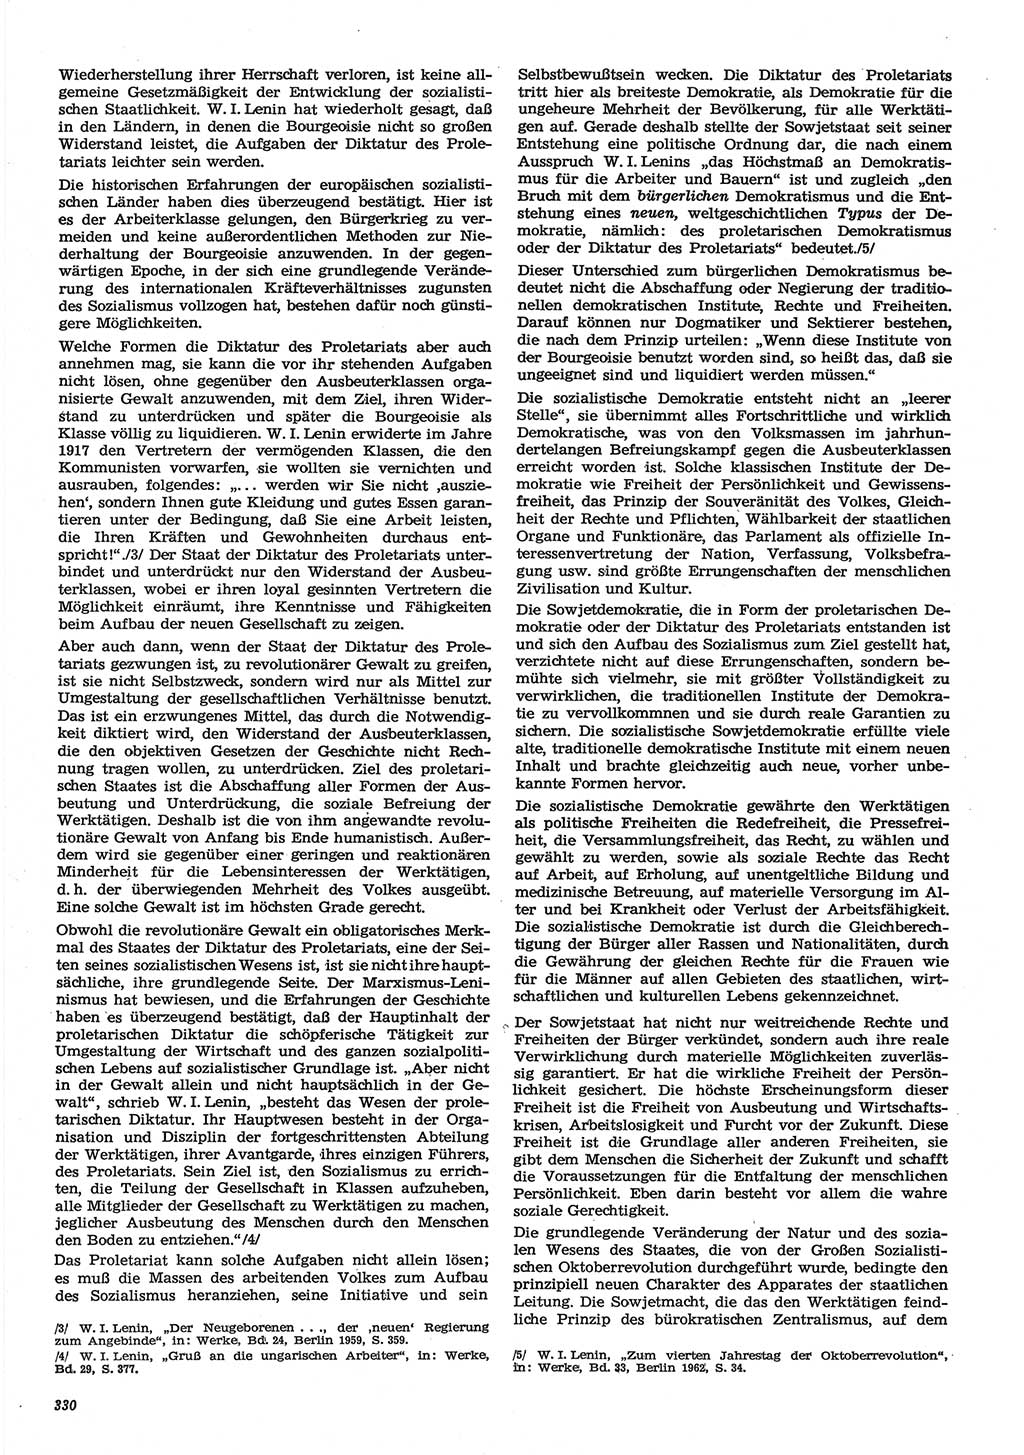 Neue Justiz (NJ), Zeitschrift für Recht und Rechtswissenschaft-Zeitschrift, sozialistisches Recht und Gesetzlichkeit, 31. Jahrgang 1977, Seite 330 (NJ DDR 1977, S. 330)